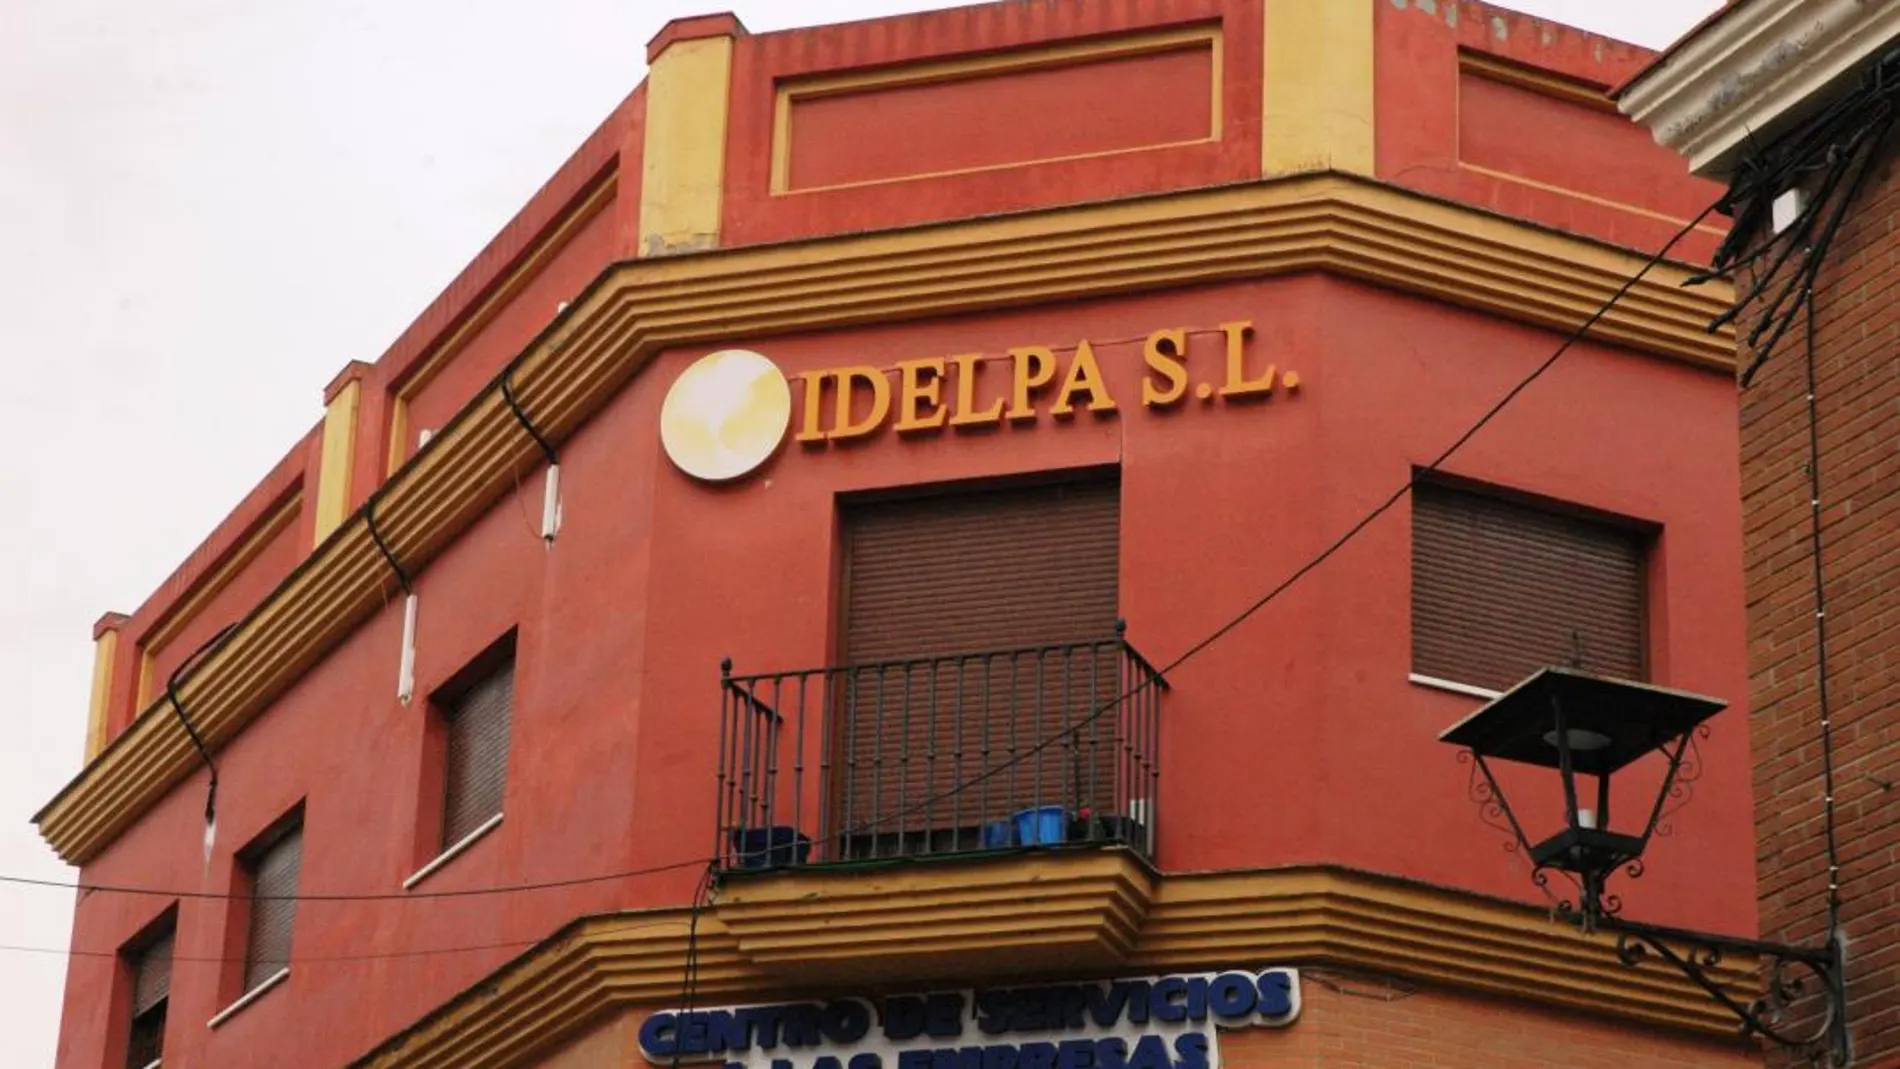 Condenado el ex alcalde socialista de Los Palacios Antonio Maestre por el concurso de Idelpa